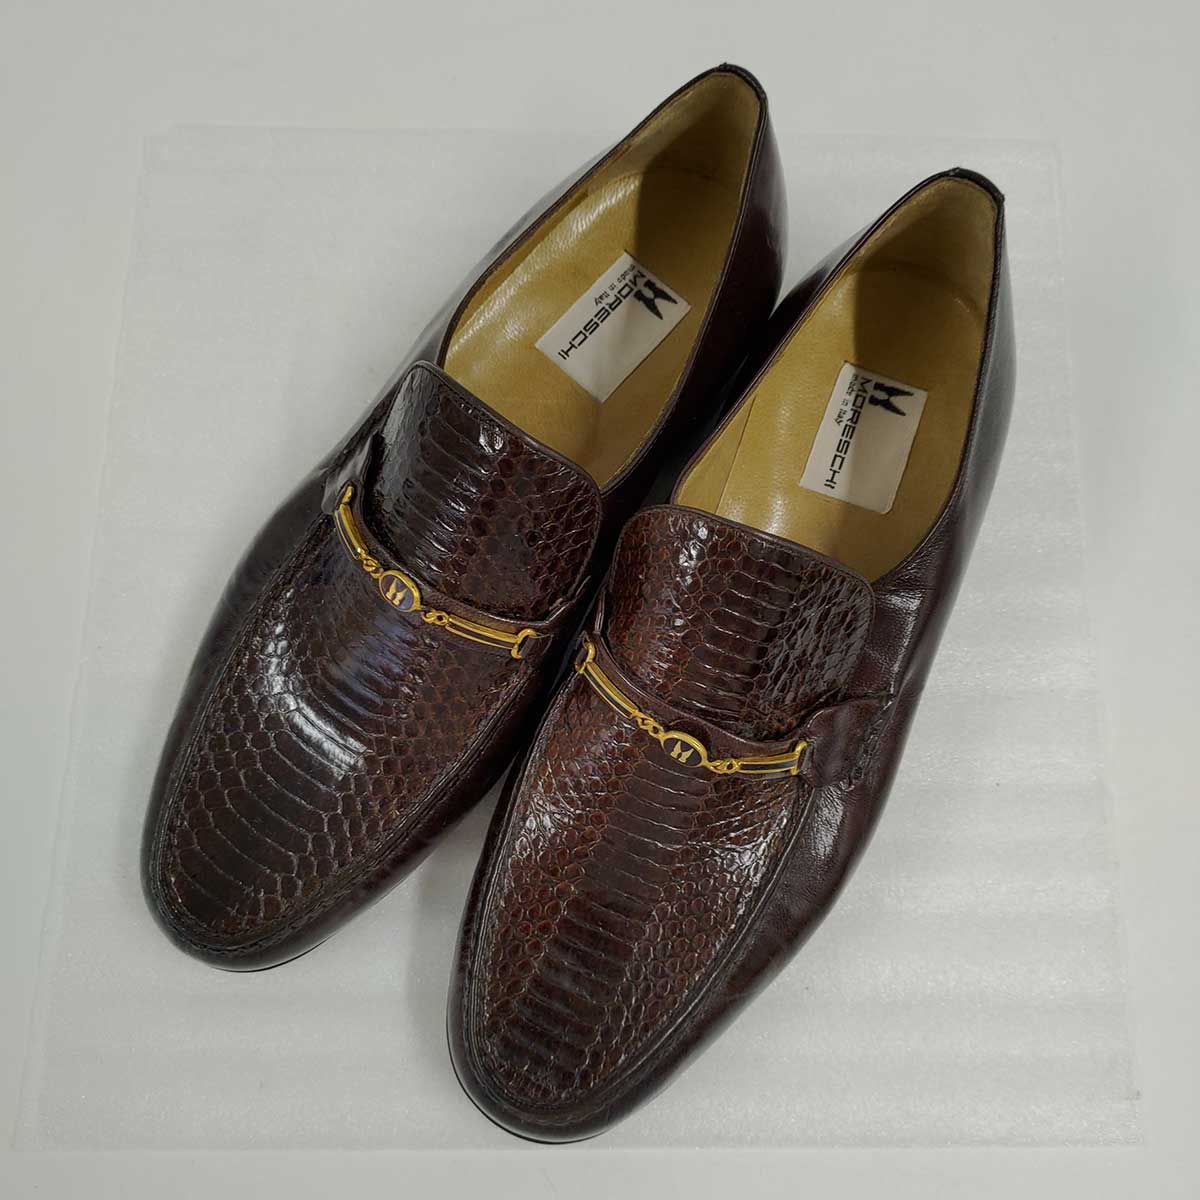 モレスキー クロコダイル靴 42.5 - ドレス/ビジネス